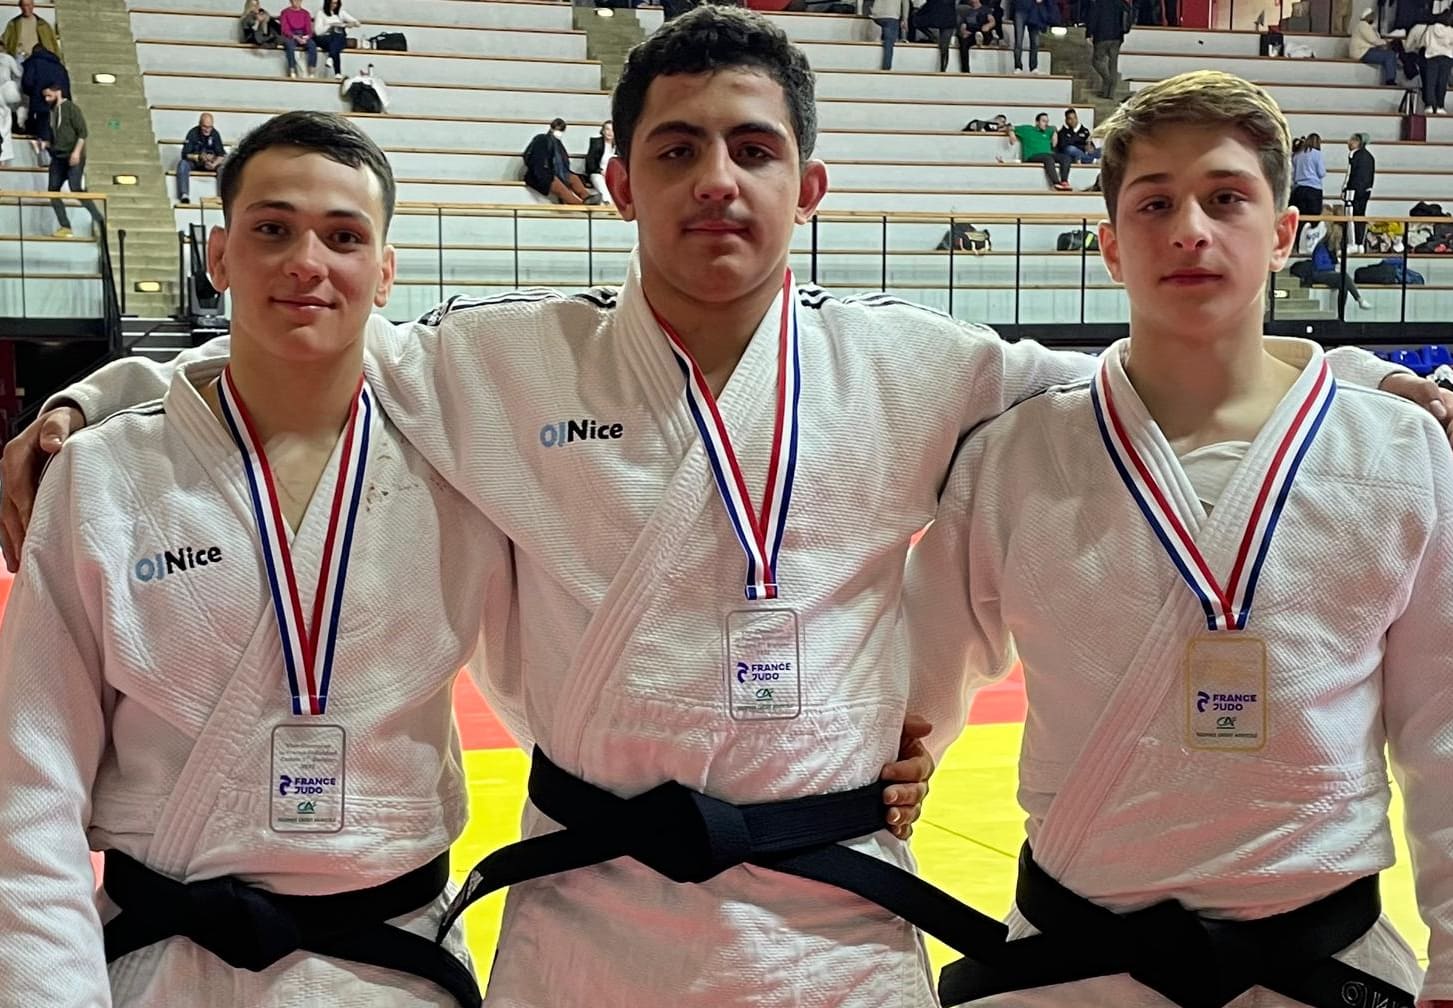 Championnats de France cadets, 3 médailles pour l’OJNice.